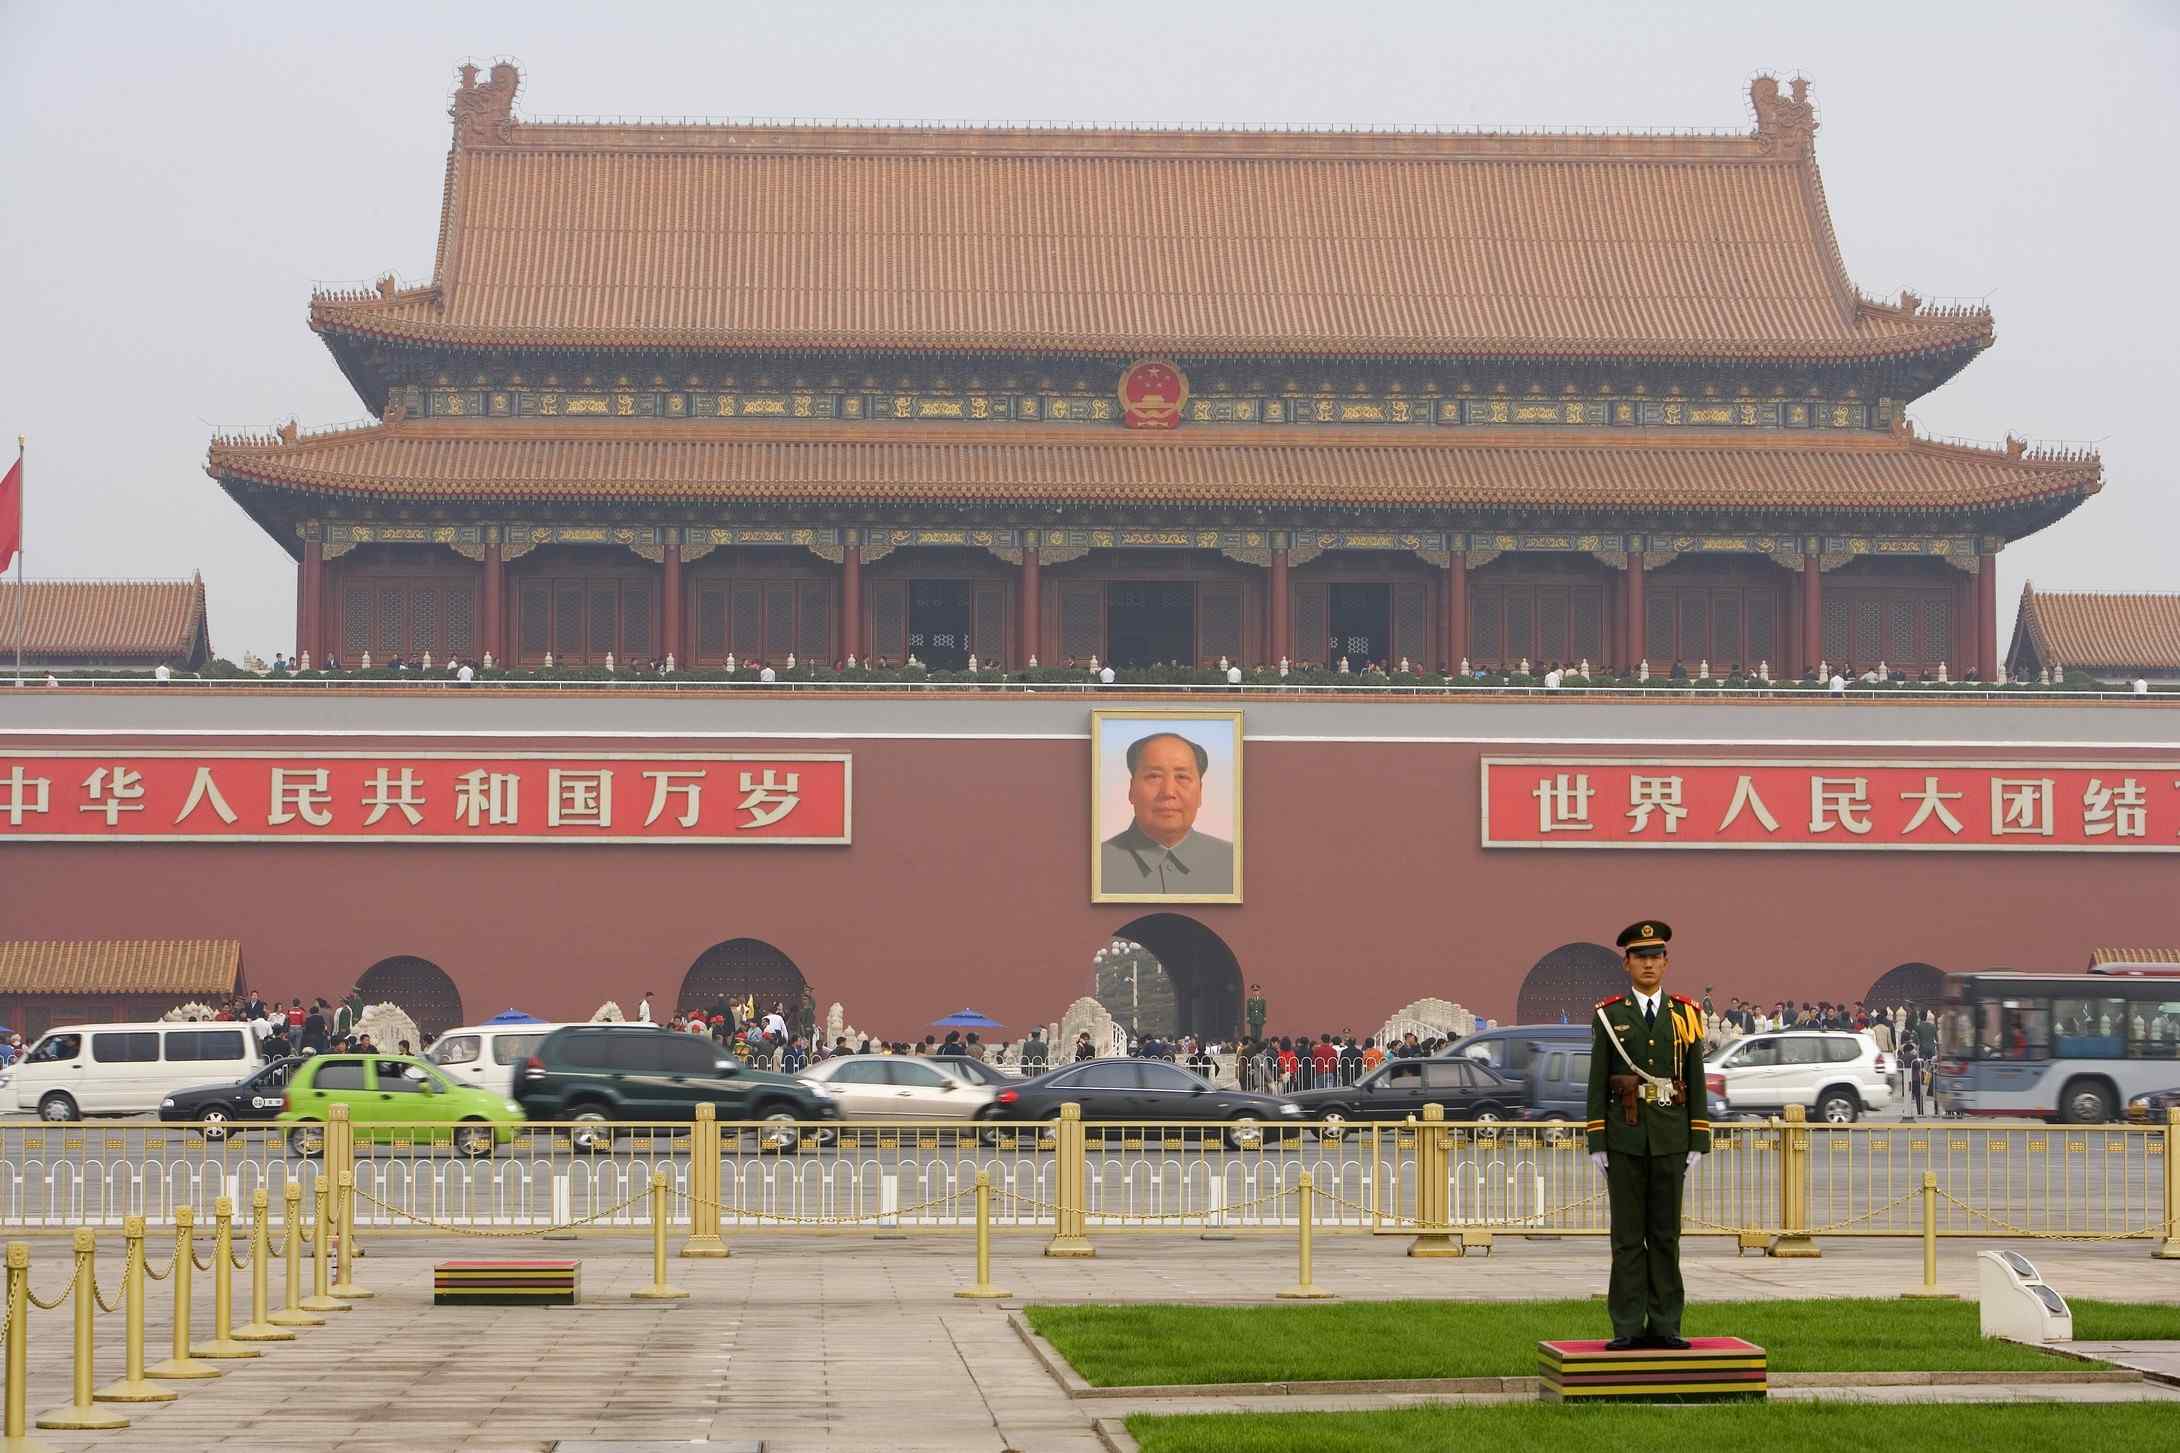 北京风景之天安门国旗护卫队站岗桌面壁纸